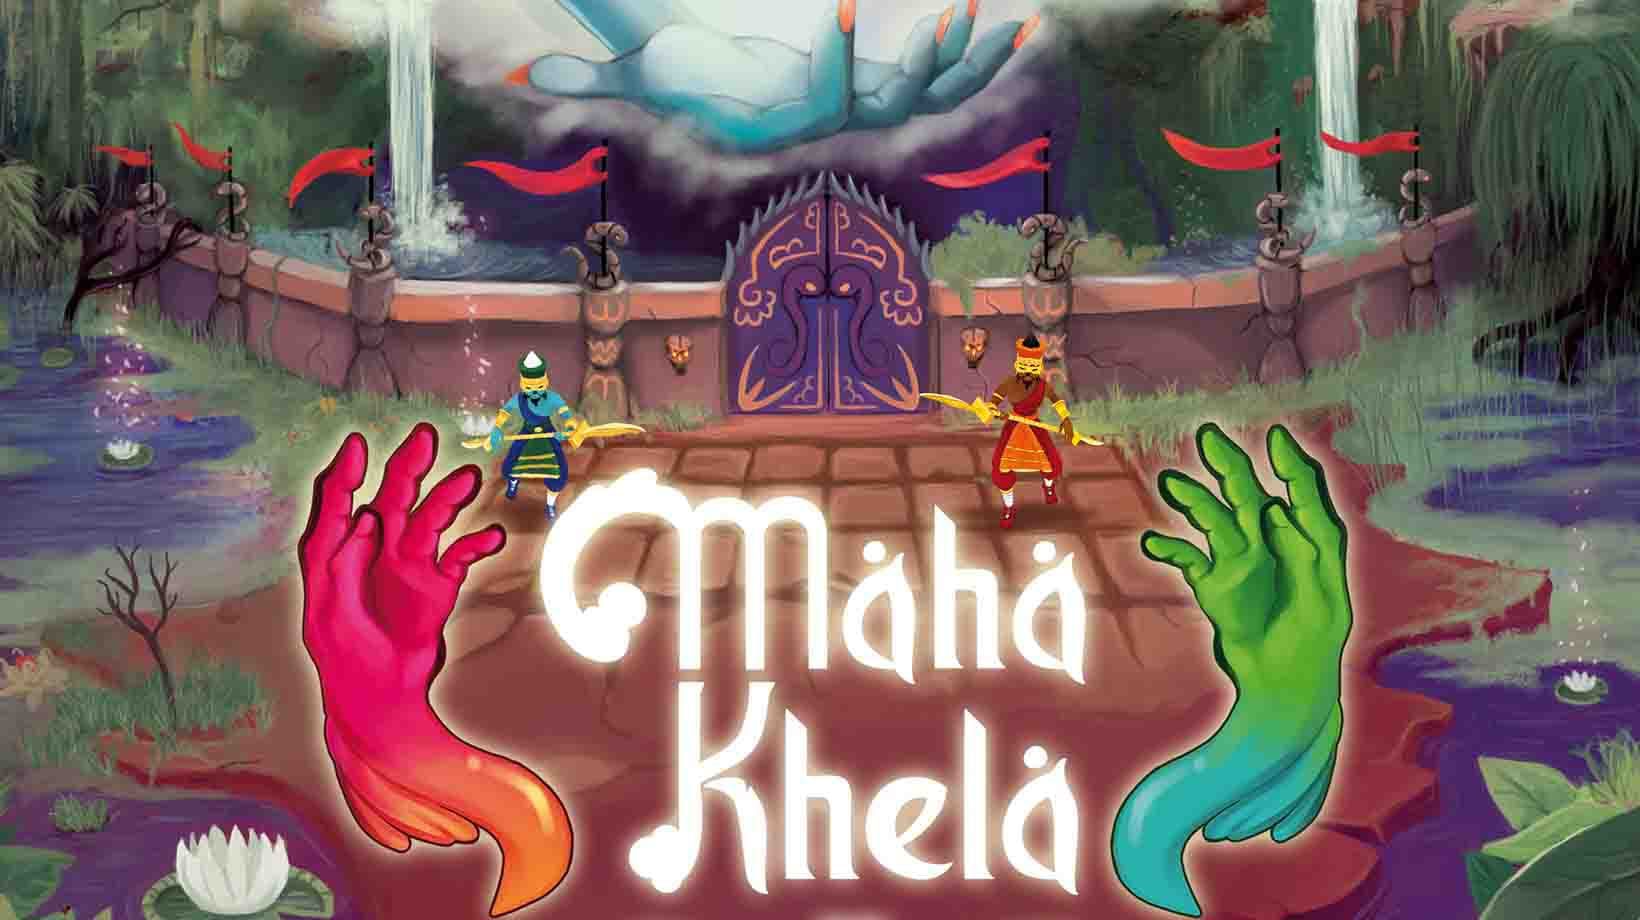 Maha khela